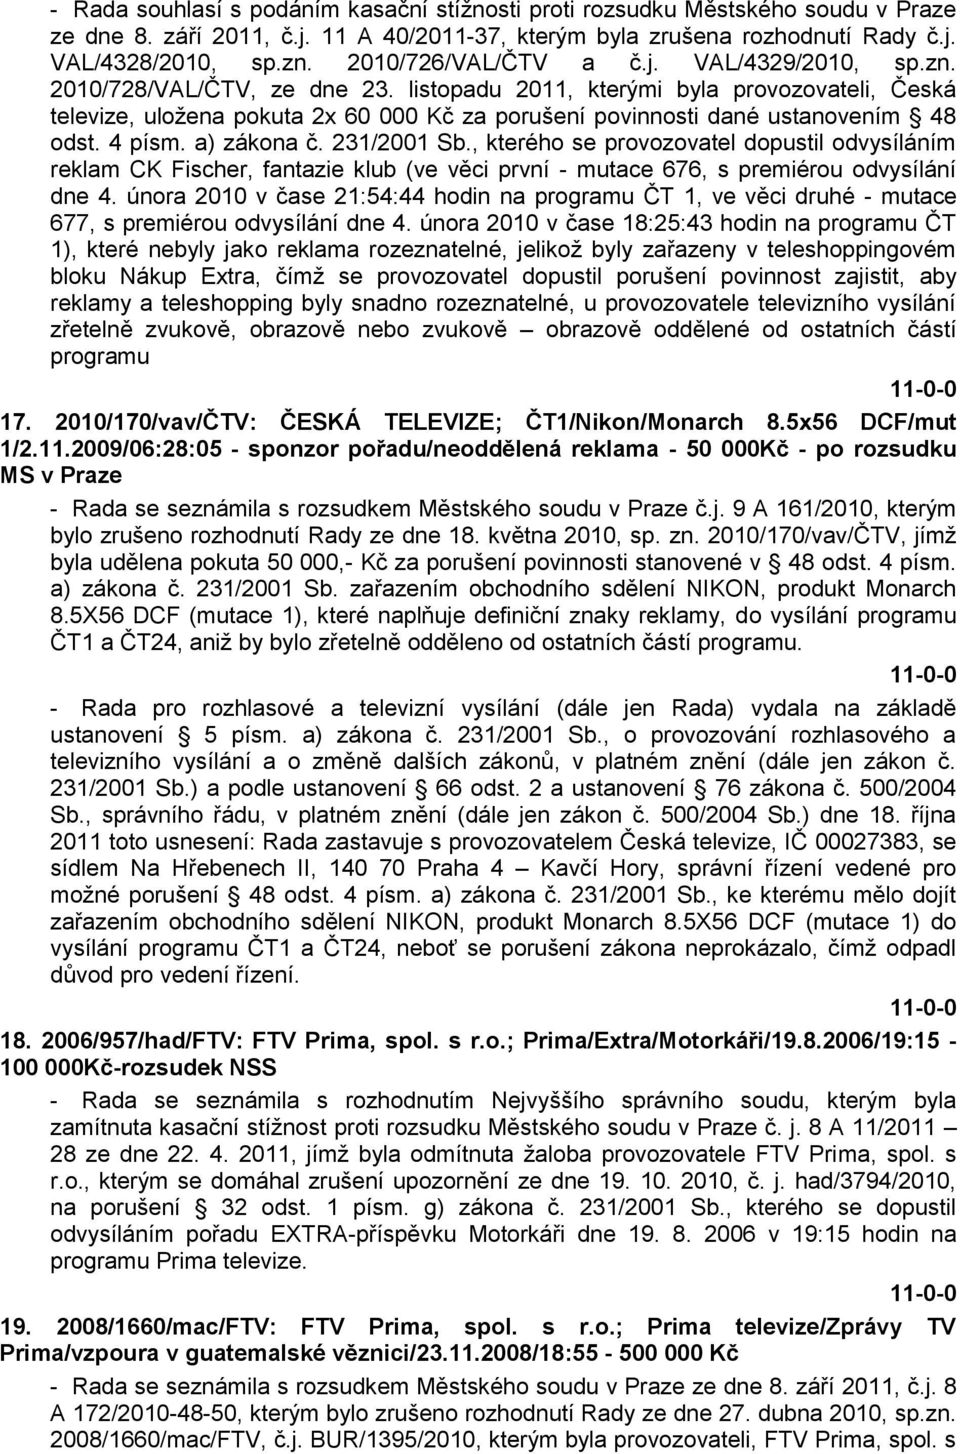 listopadu 2011, kterými byla provozovateli, Česká televize, uloţena pokuta 2x 60 000 Kč za porušení povinnosti dané ustanovením 48 odst. 4 písm. a) zákona č. 231/2001 Sb.